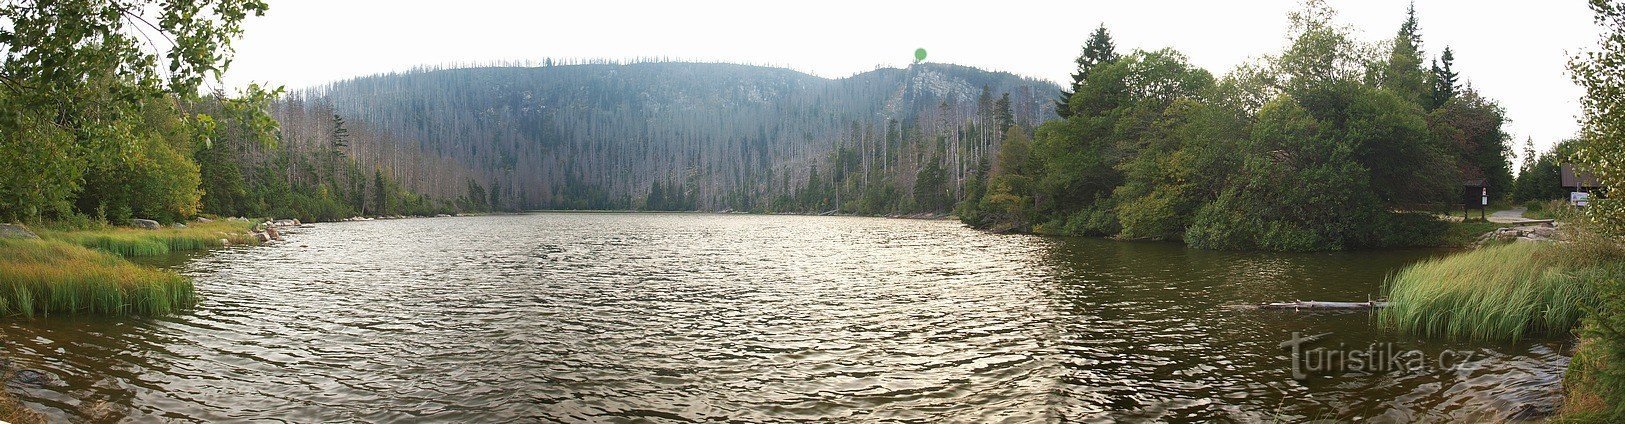 ダムから取った禿げた湖。 緑の点は石のオベリのある視点を示しています